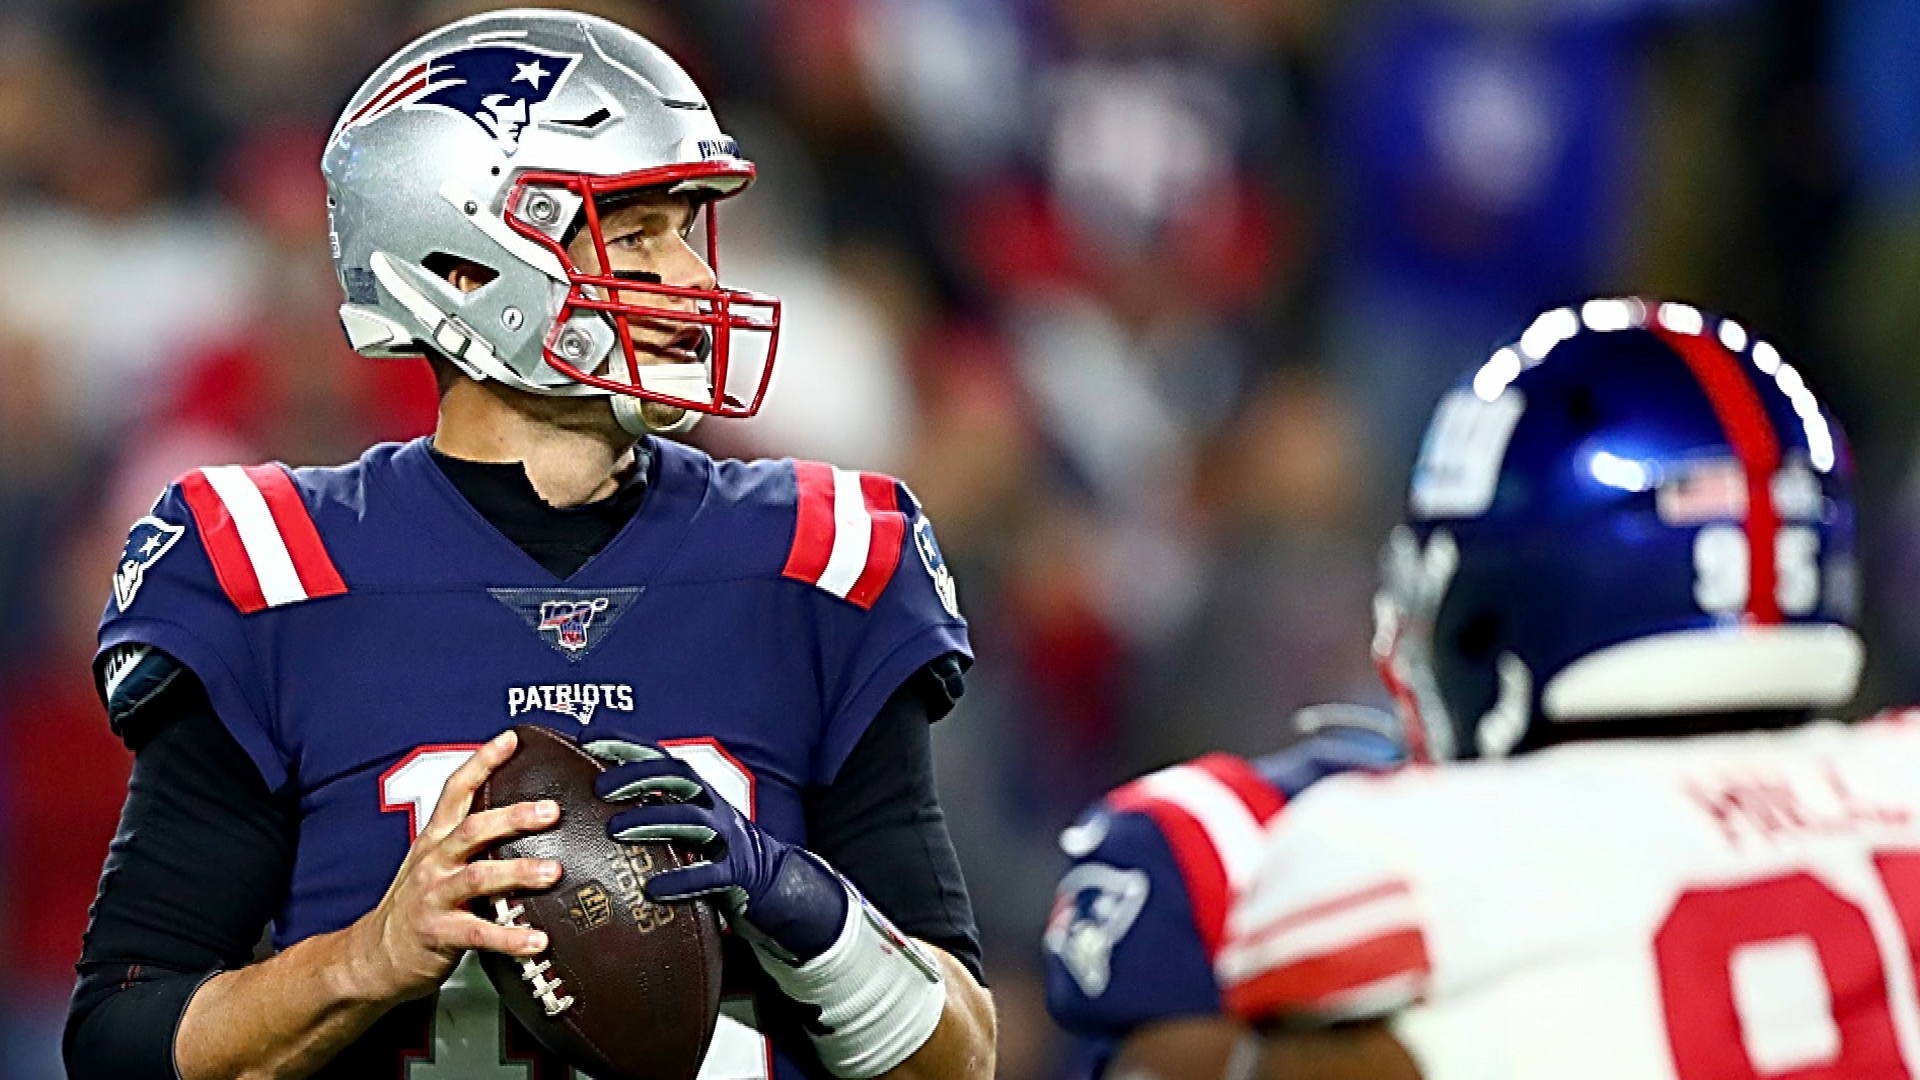 Flipboard: Tom Brady, Patriots offense look slow in 35-14 win vs. Giants on TNF